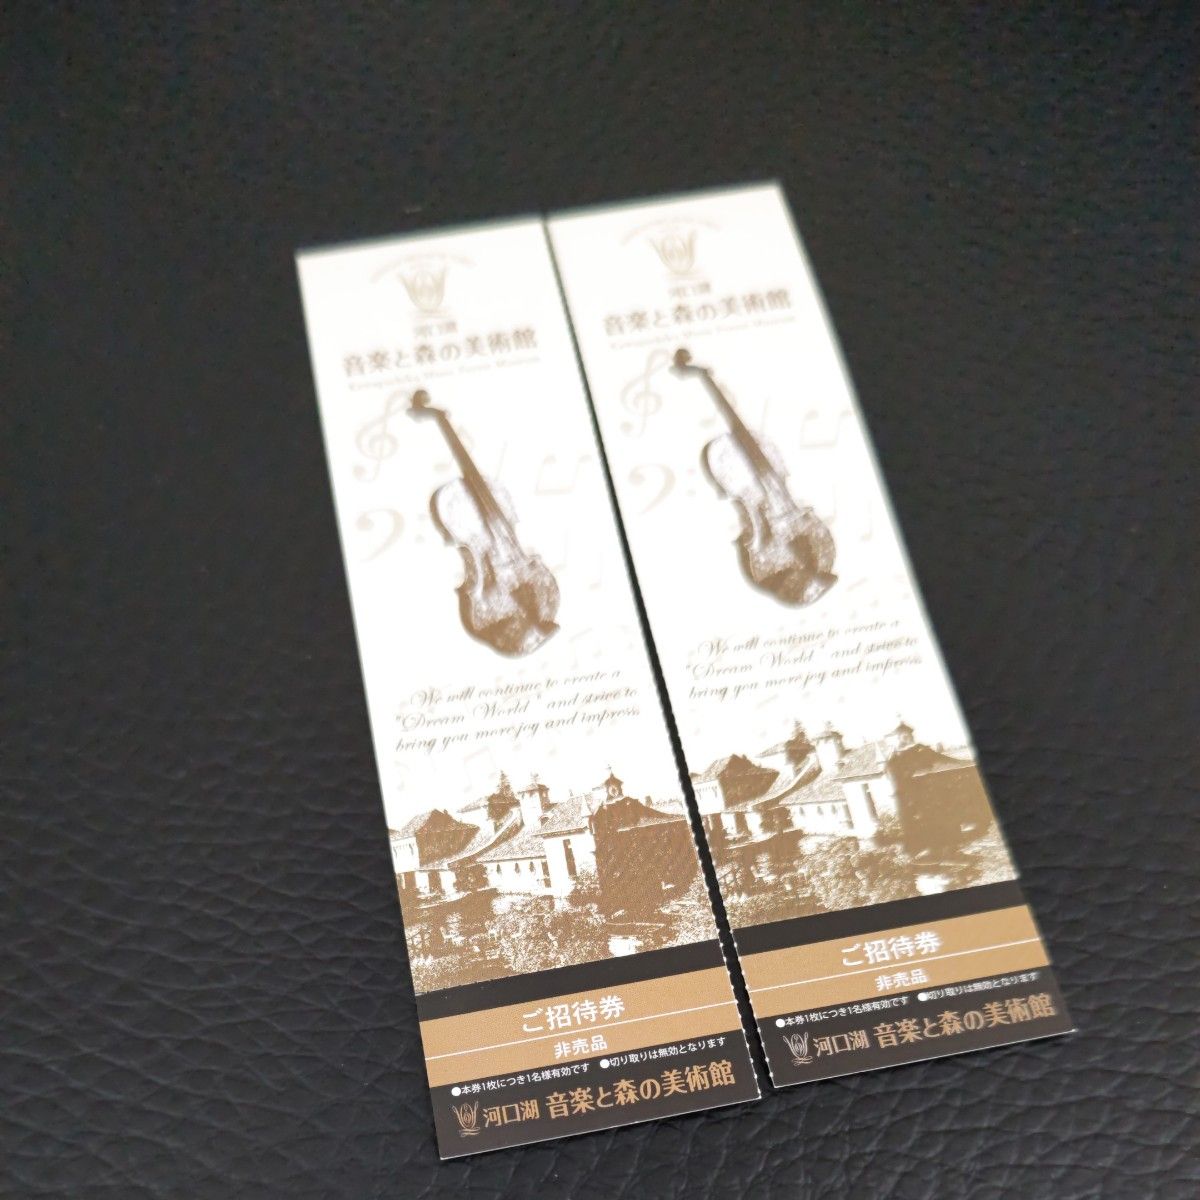 河口湖 音楽と森の美術館の招待券5枚セットです。  1枚・定価1800円です。